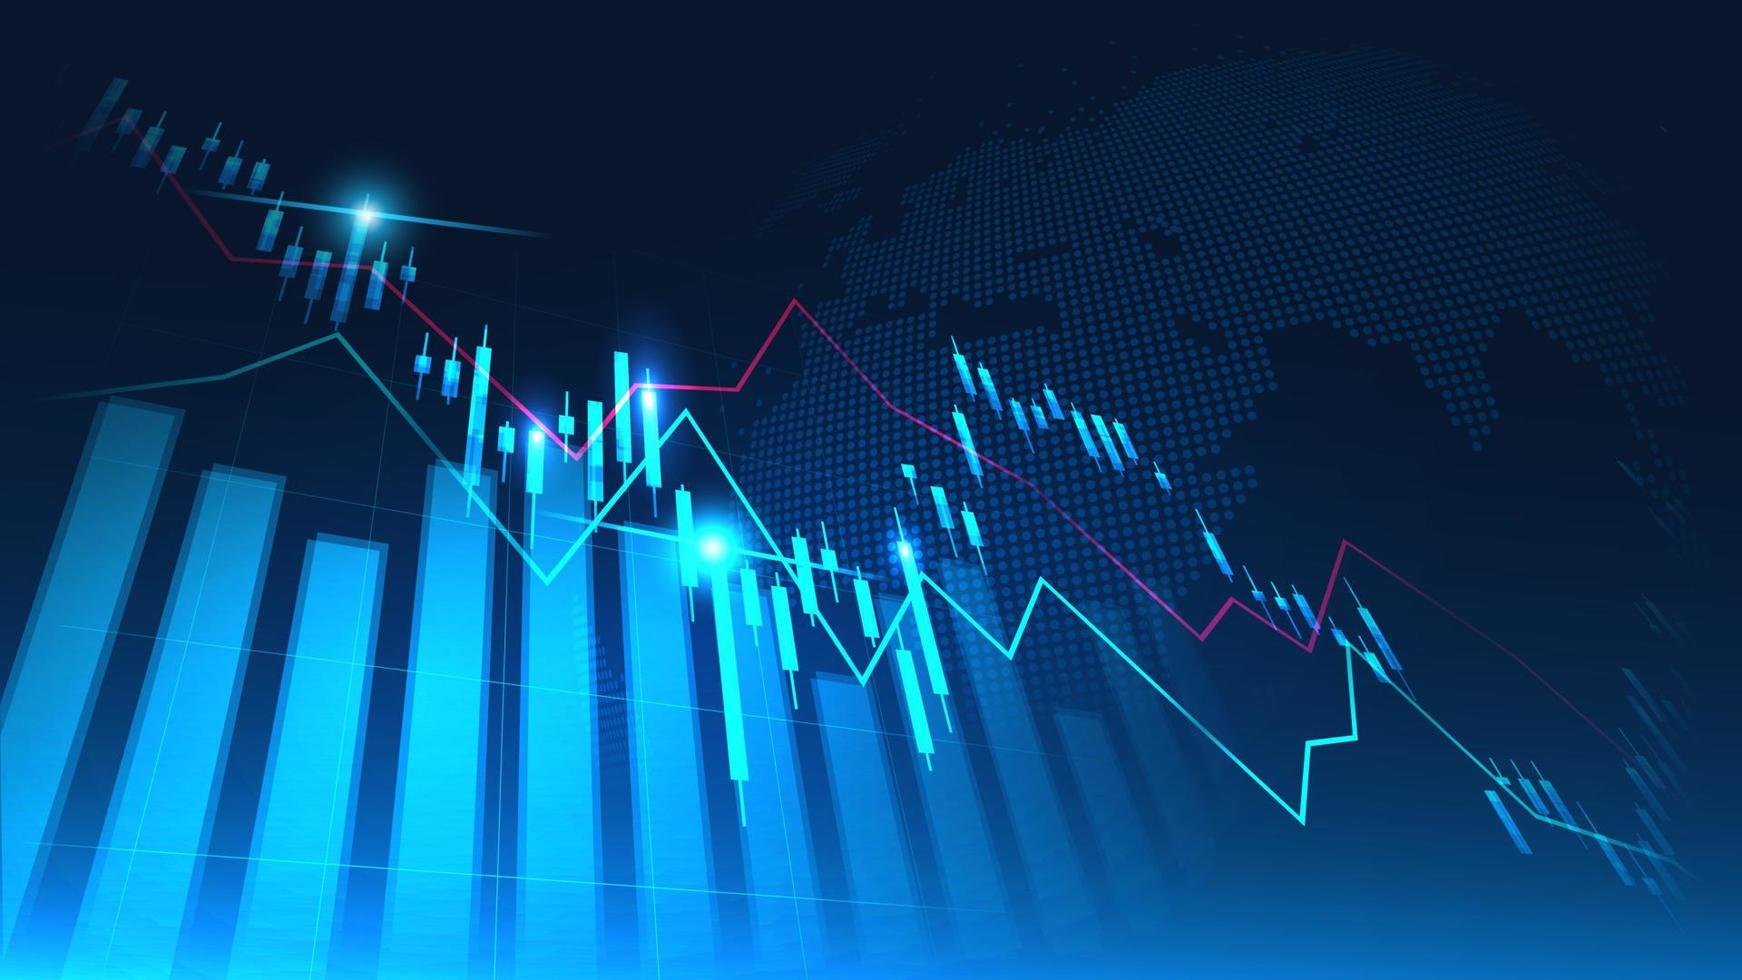 aktiemarknads- eller valutahandeldiagram i grafiskt koncept som är lämpligt för finansiella investeringar eller ekonomiska trender affärsidé och all konstdesign. abstrakt ekonomibakgrund. vektor illustration